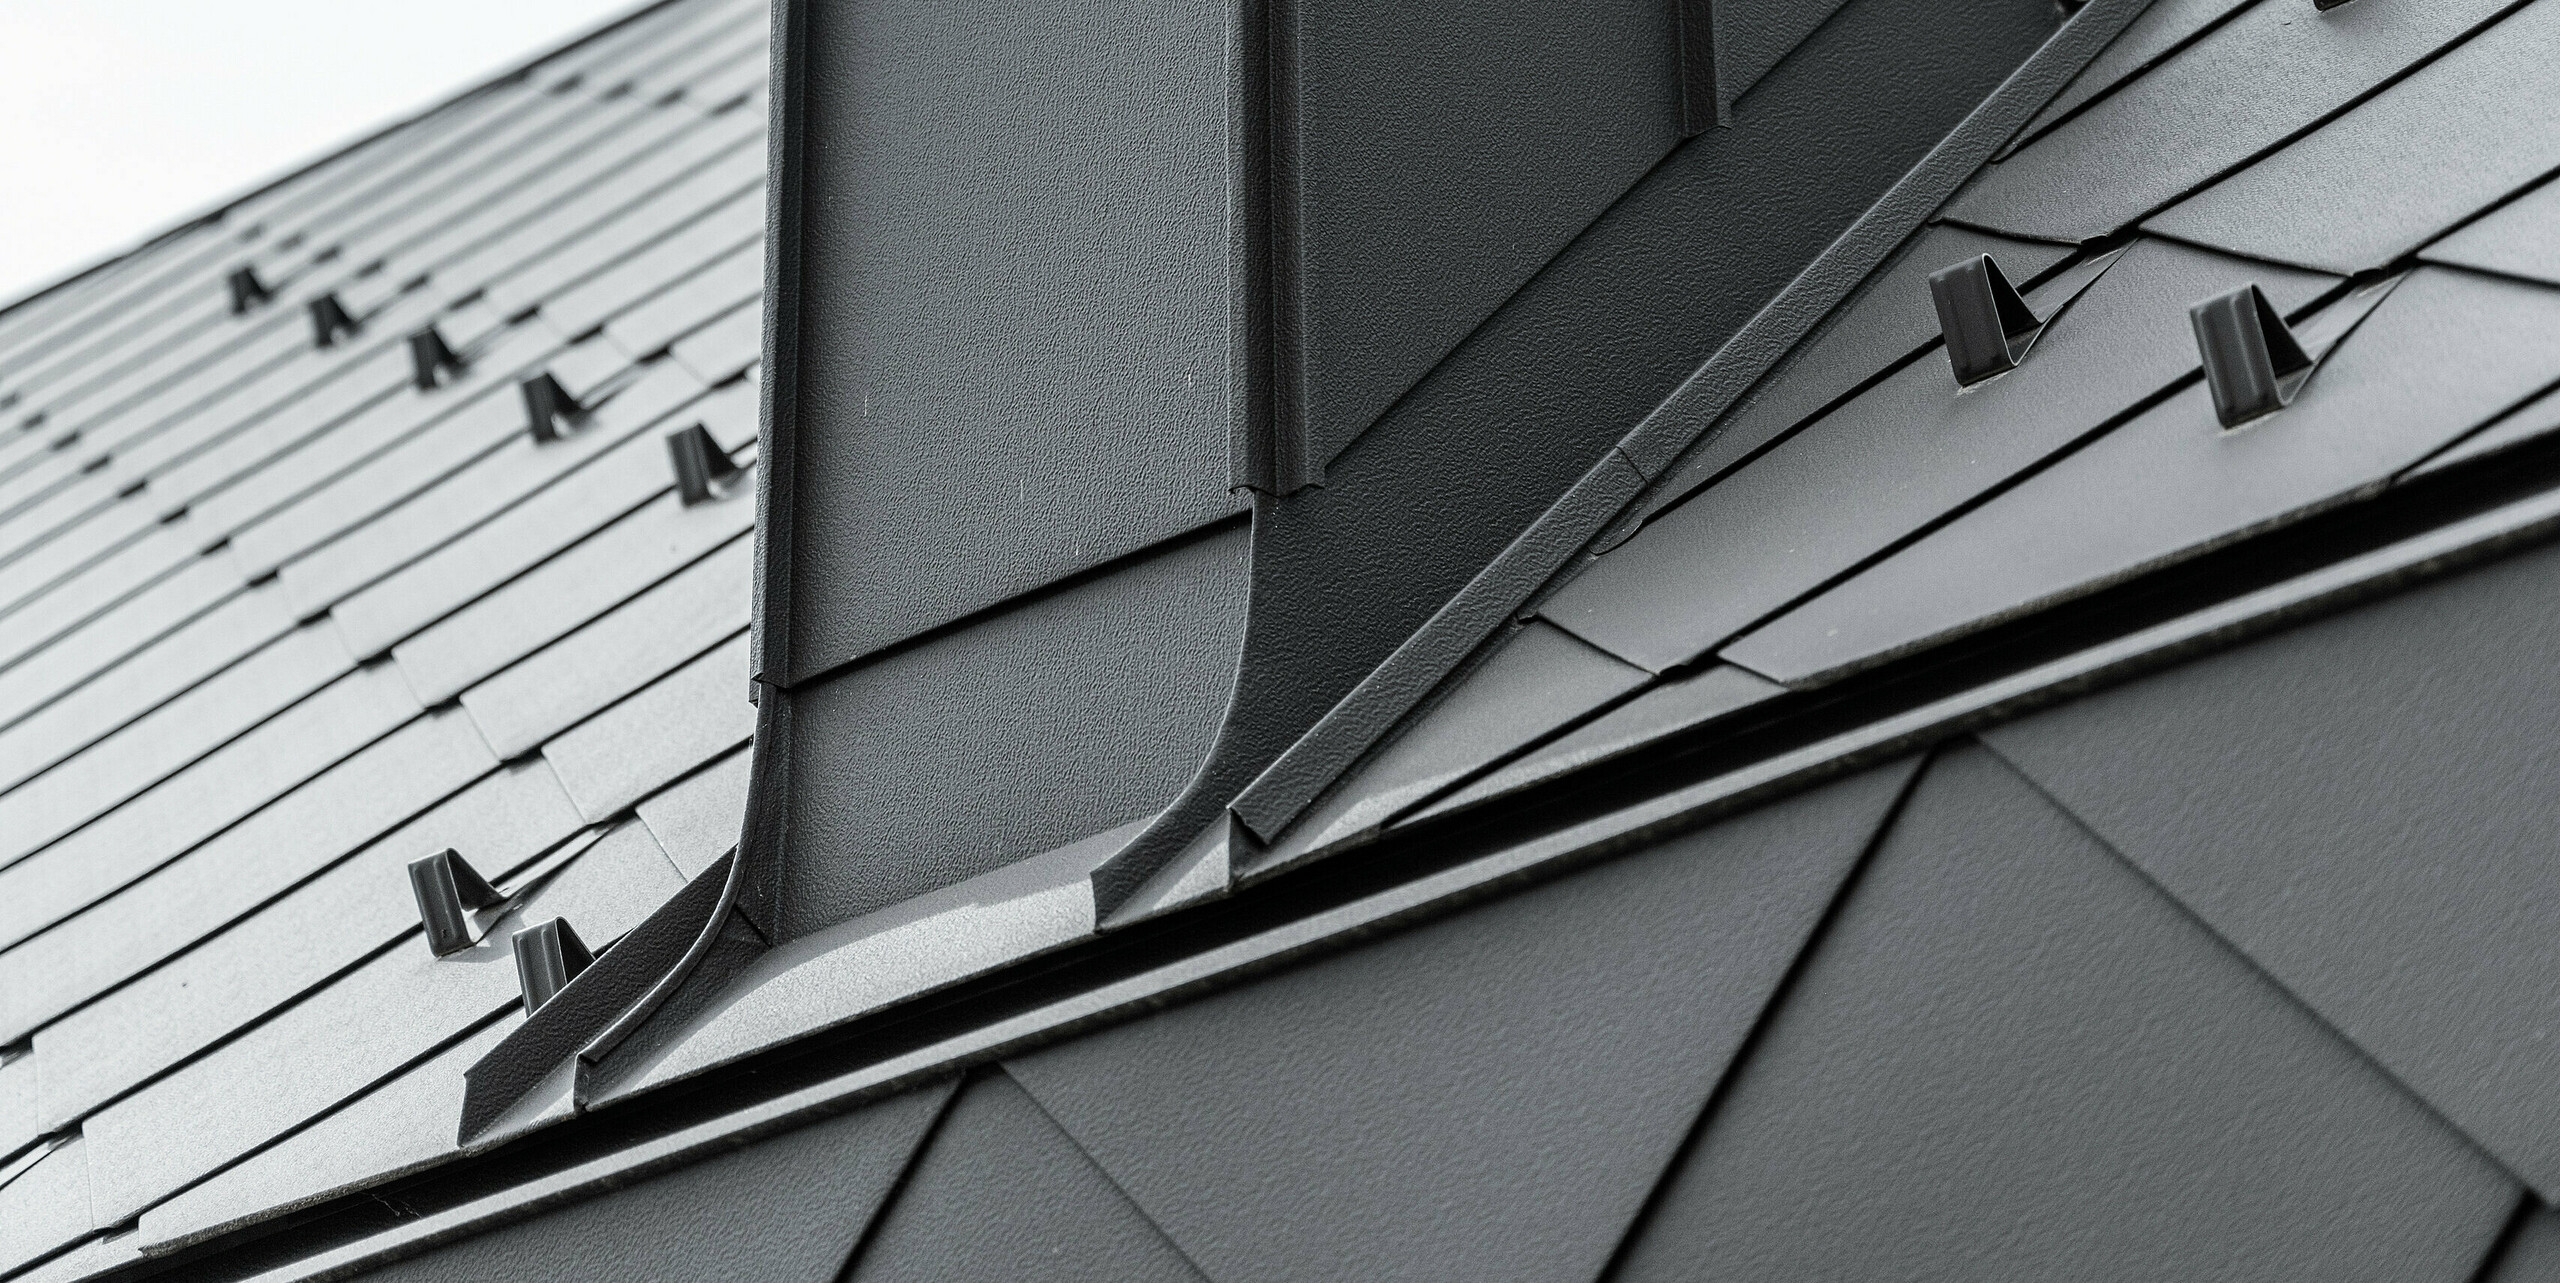 Die Traufe eines modernen Reihenhauses in Kaltern, Südtirol, besteht aus geknickten PREFA Dachrauten 44x44. Die Nahaufnahme zeigt die präzise Verarbeitung der robusten und widerstandsfähigen Blechprodukte. Die symmetrische Anordnung der Rauten aus Aluminium und die präzisen Kanten des Schornsteins heben die klaren Linien und die strukturierte Oberfläche hervor, welche die architektonische Eleganz des Gebäudes betont.